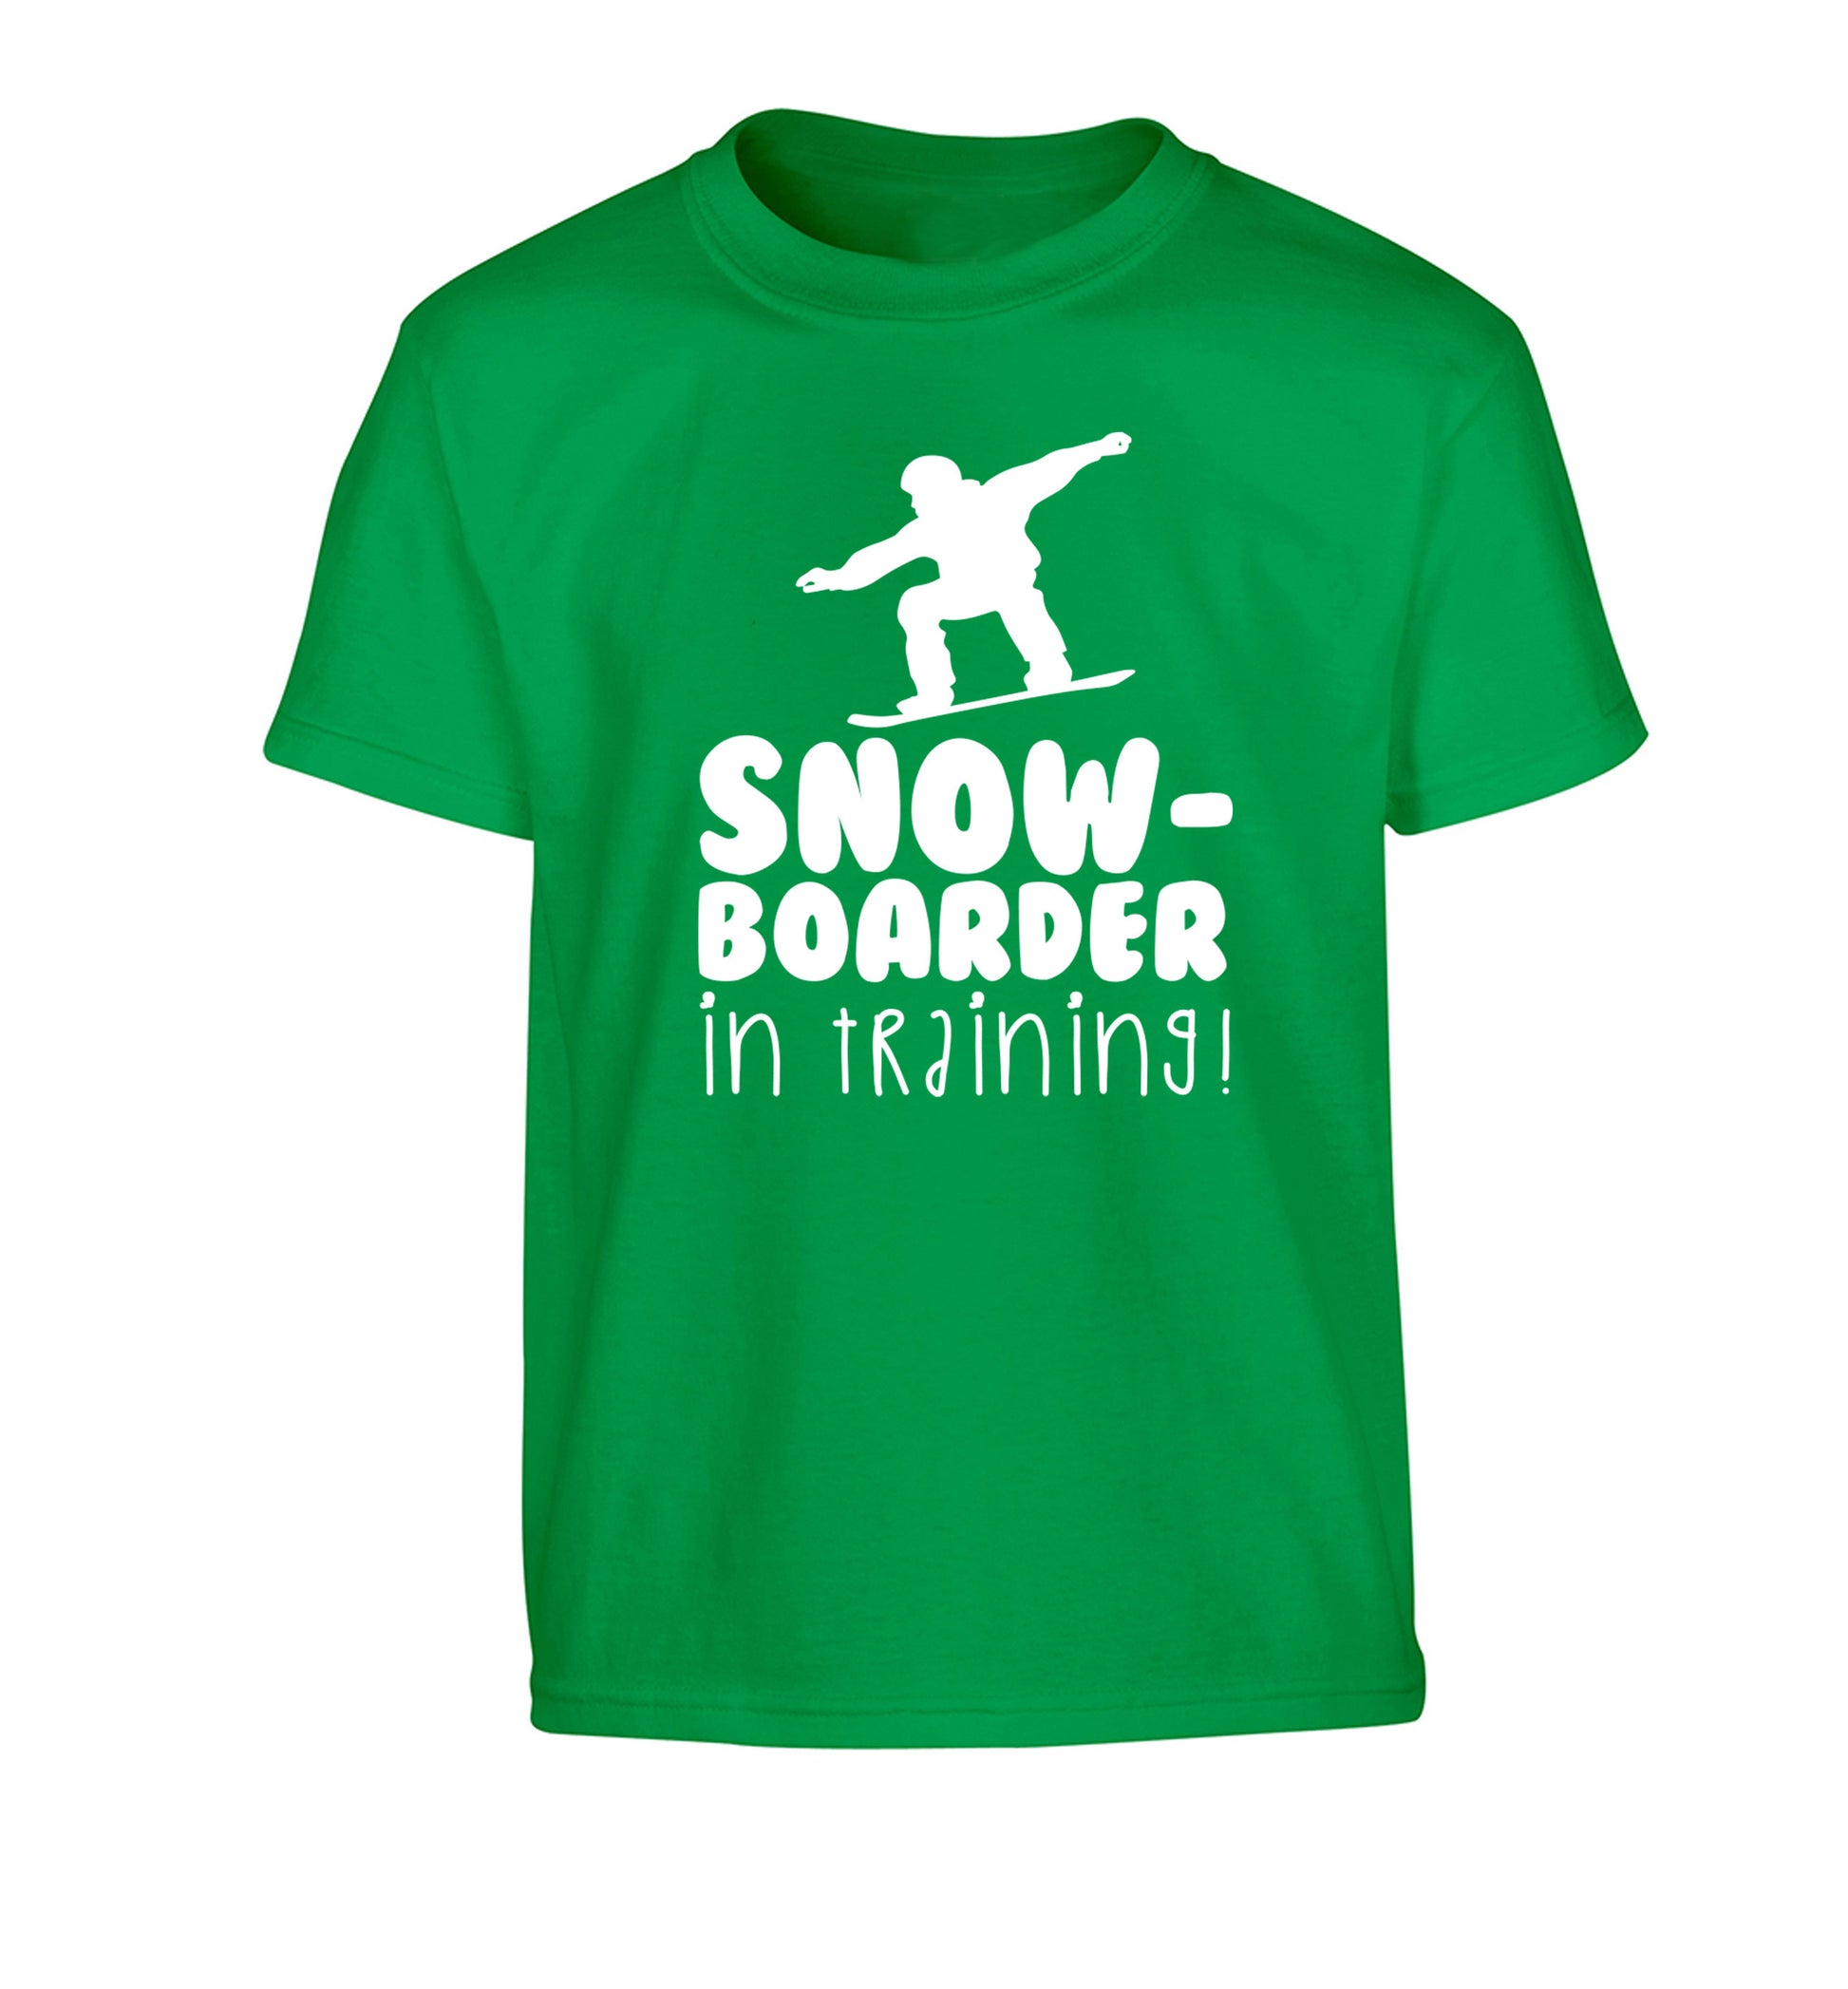 Snowboarder in training Children's green Tshirt 12-14 Years